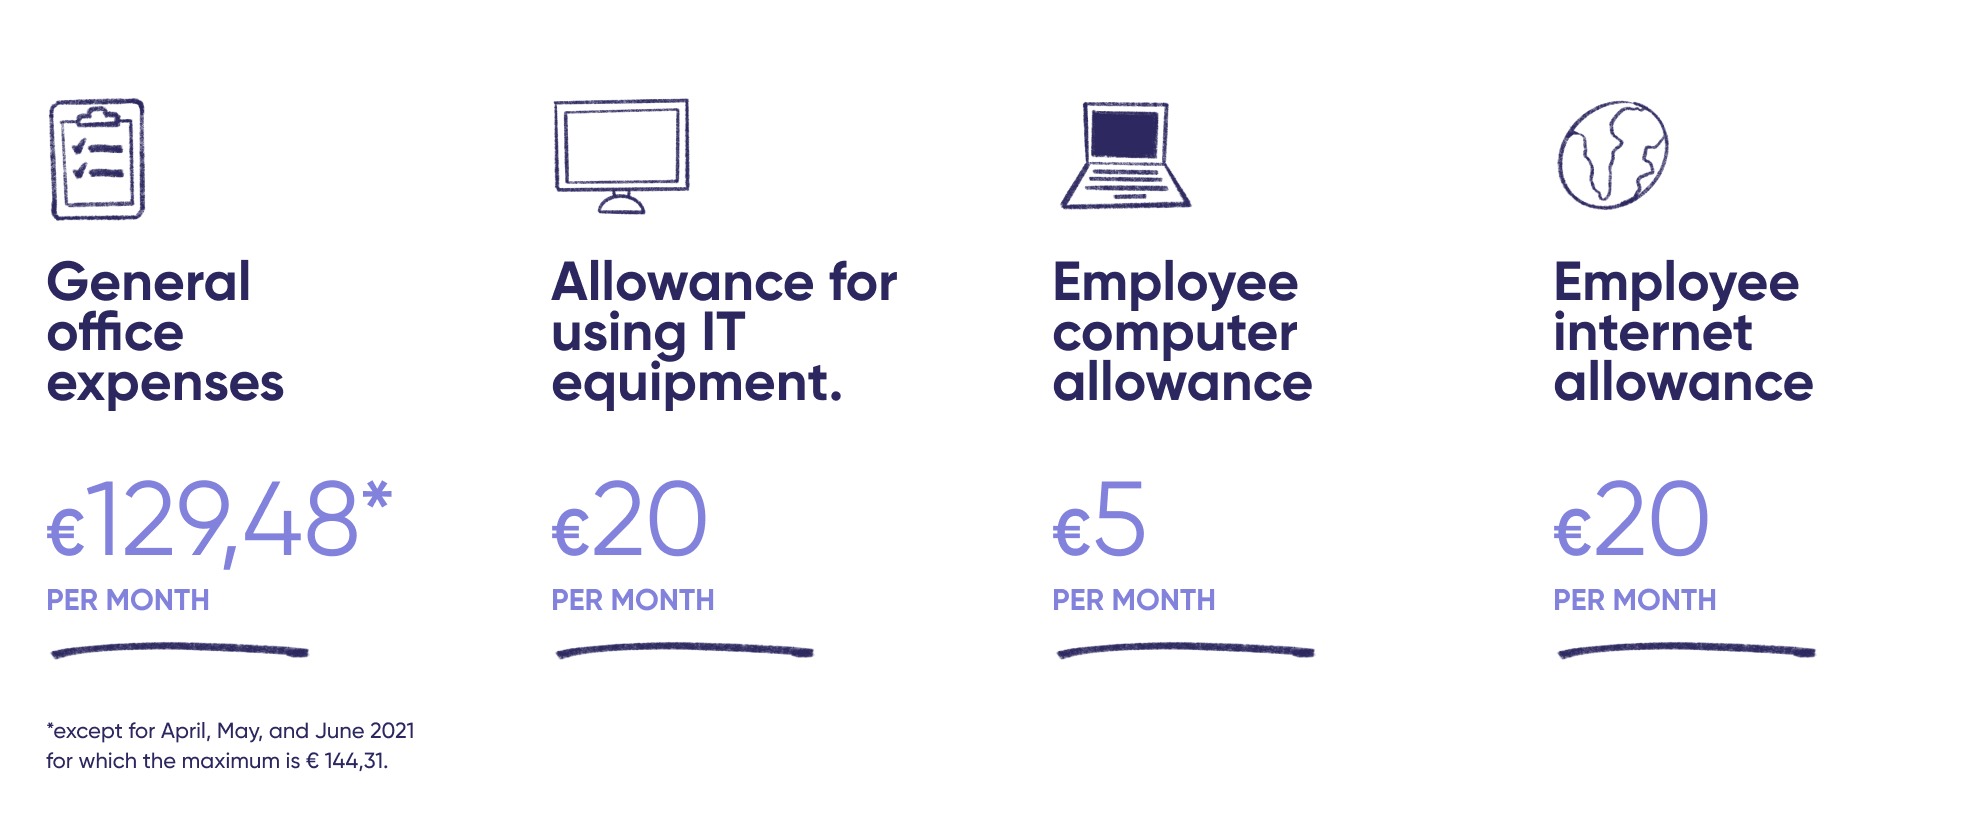 General office expenses + allowance for using IT equipment + Employee computer allowance + Employee internet allowance